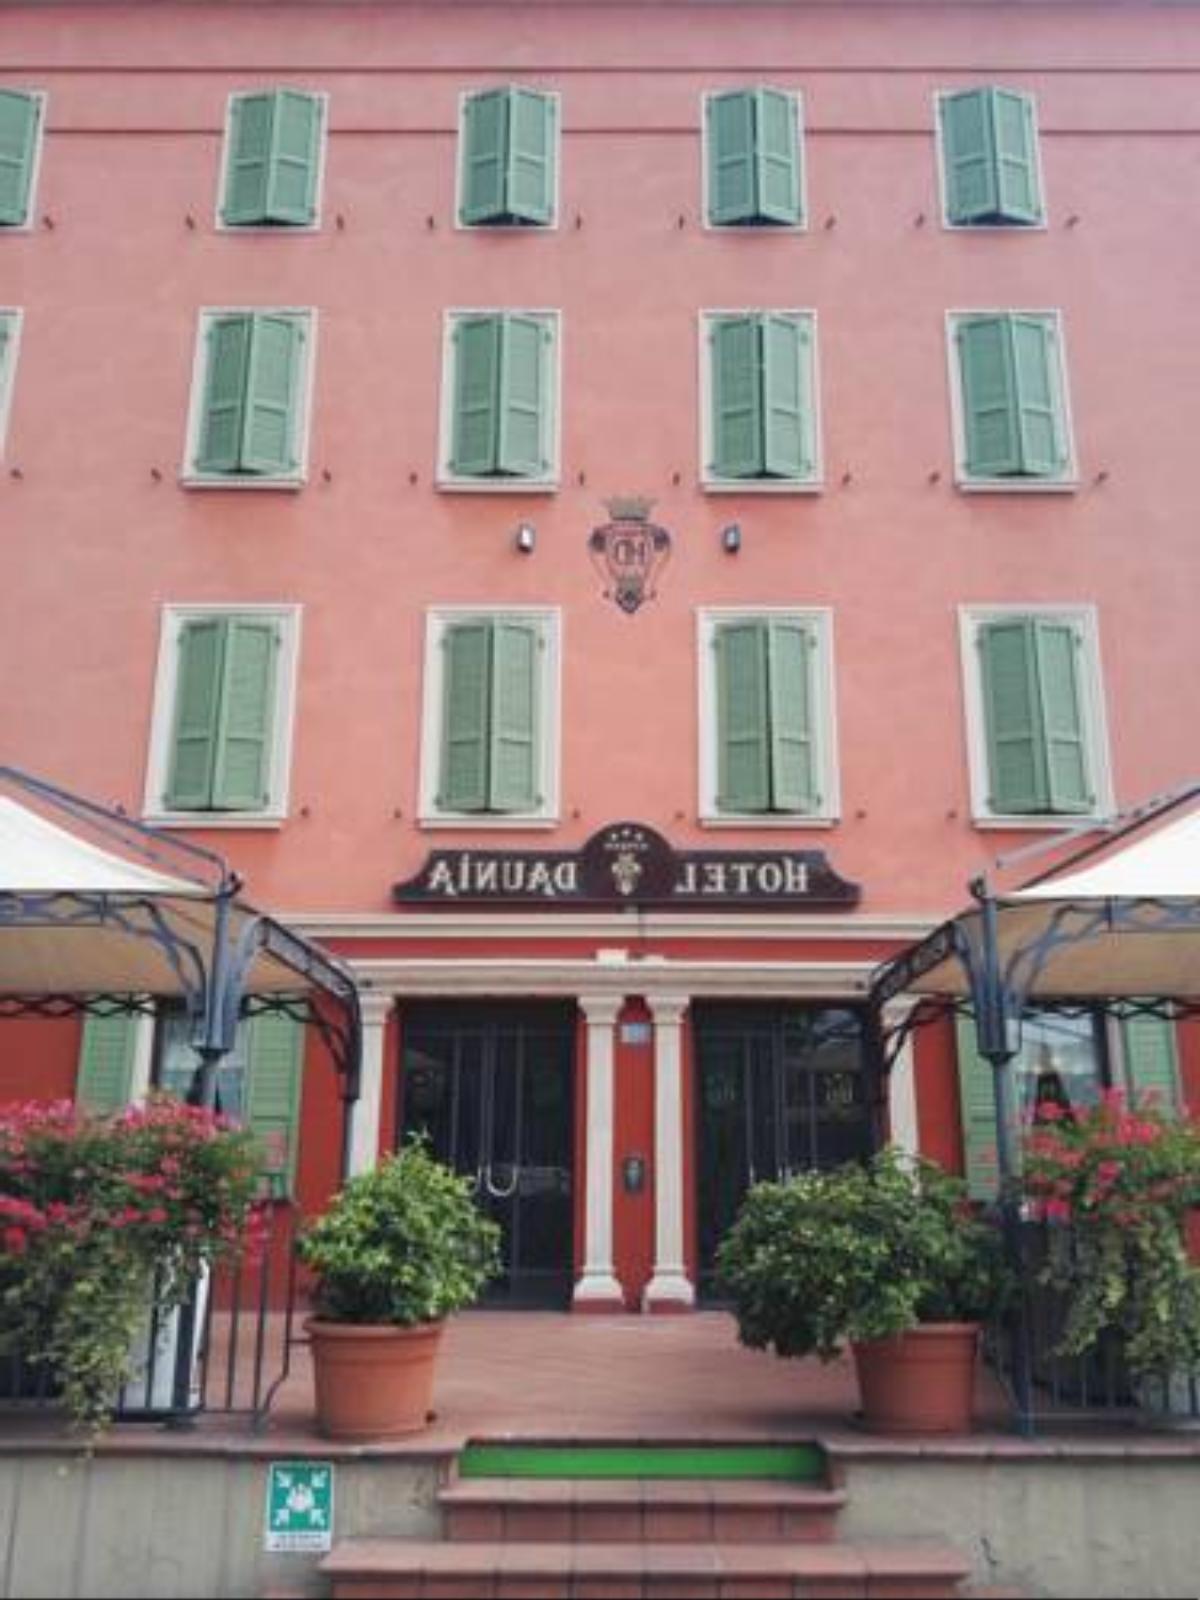 Hotel Daunia Hotel Modena Italy